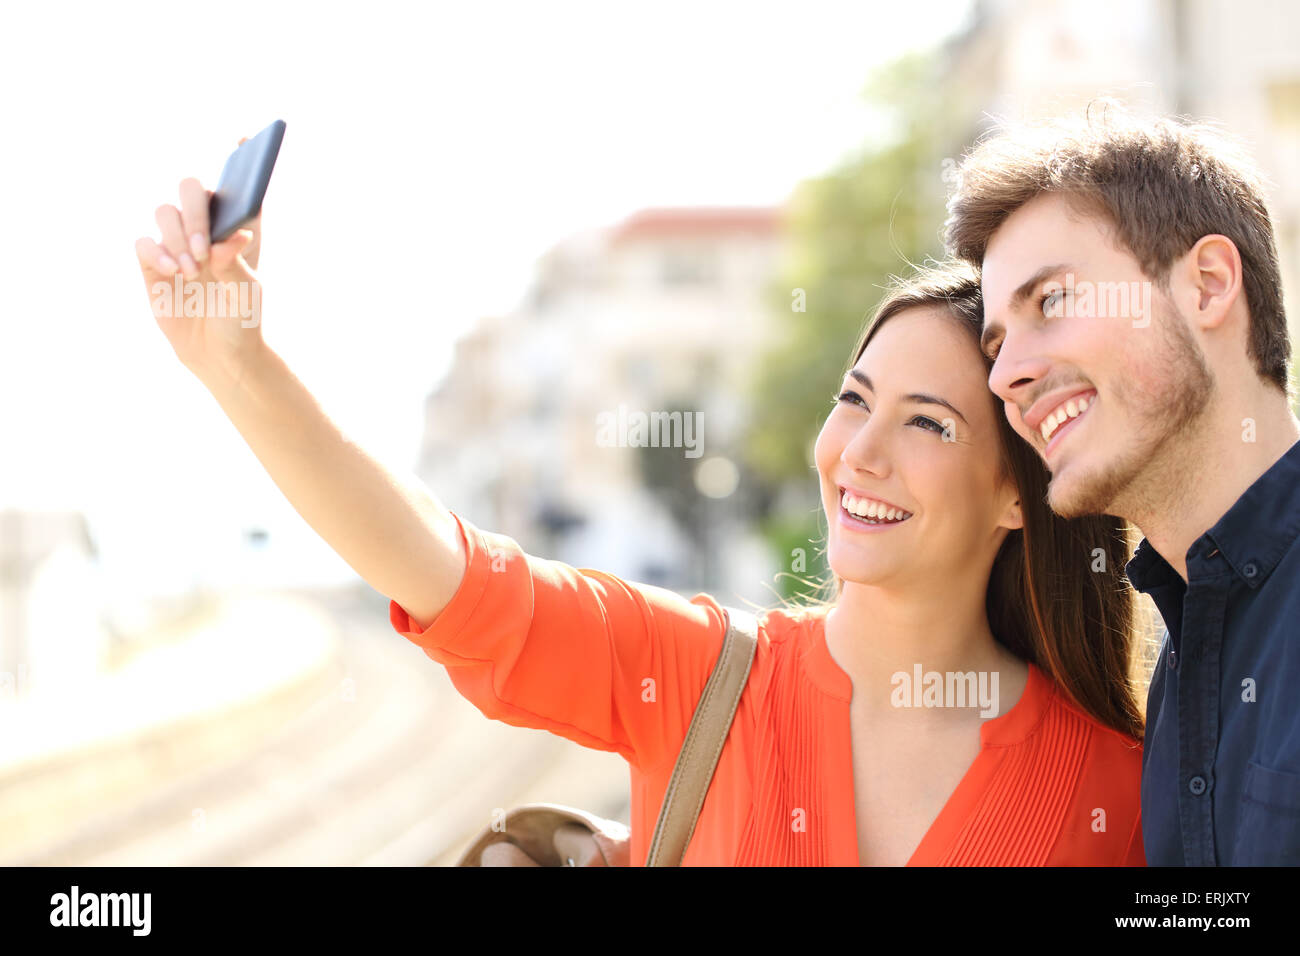 Photographier un couple de touristes voyageur dans une gare selfies Banque D'Images